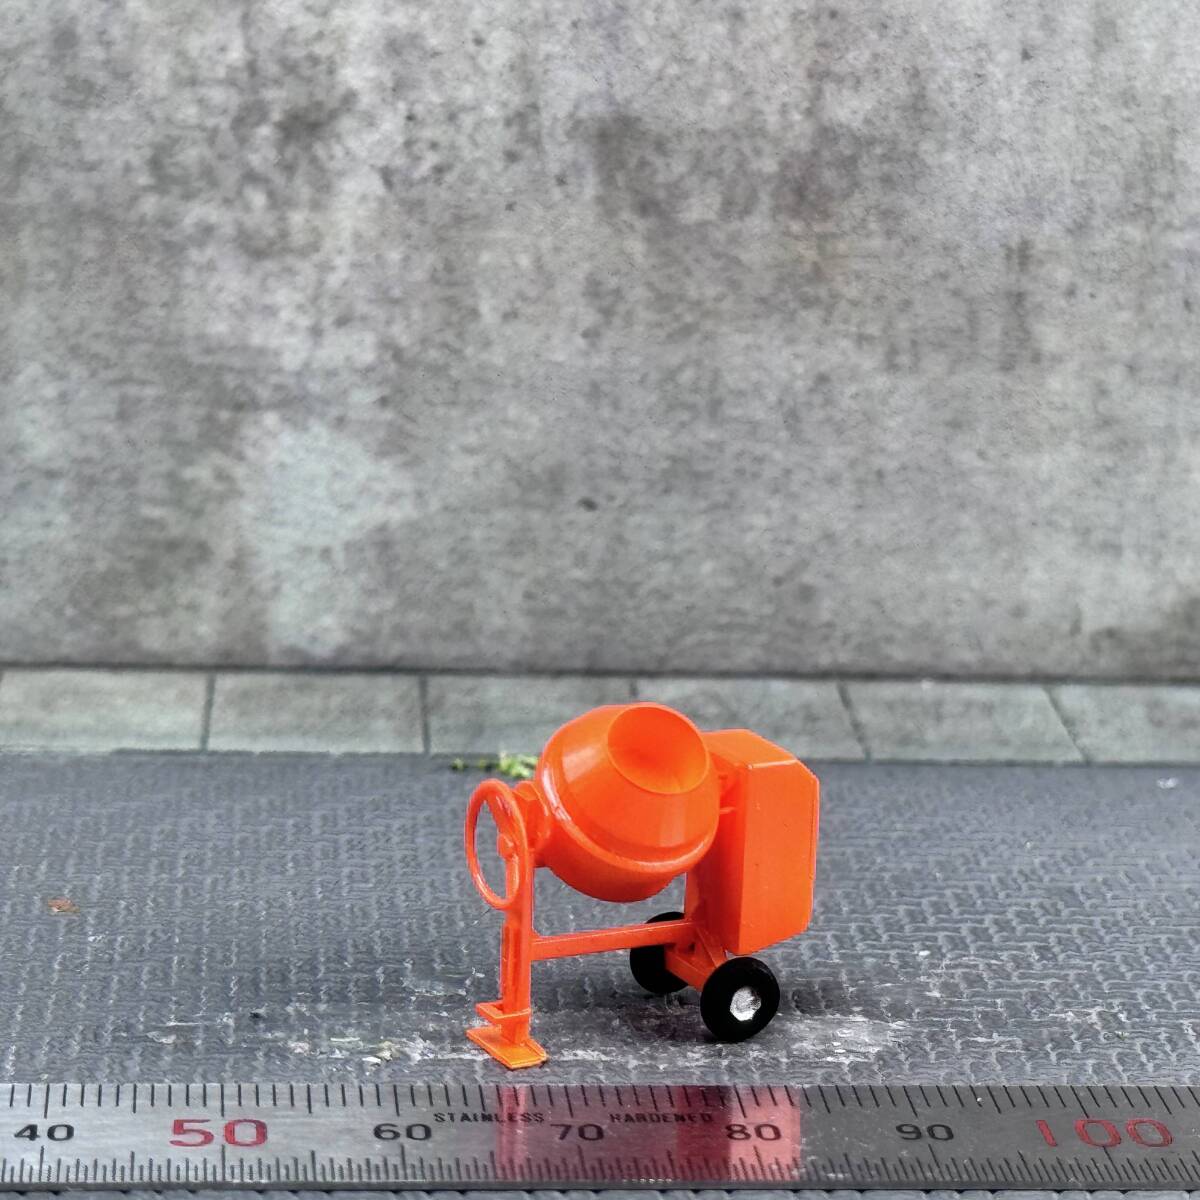 【MC-250】1/64 スケール コンクリートミキサー 橙 セメント フィギュア ミニチュア ジオラマ ミニカー トミカ_画像1